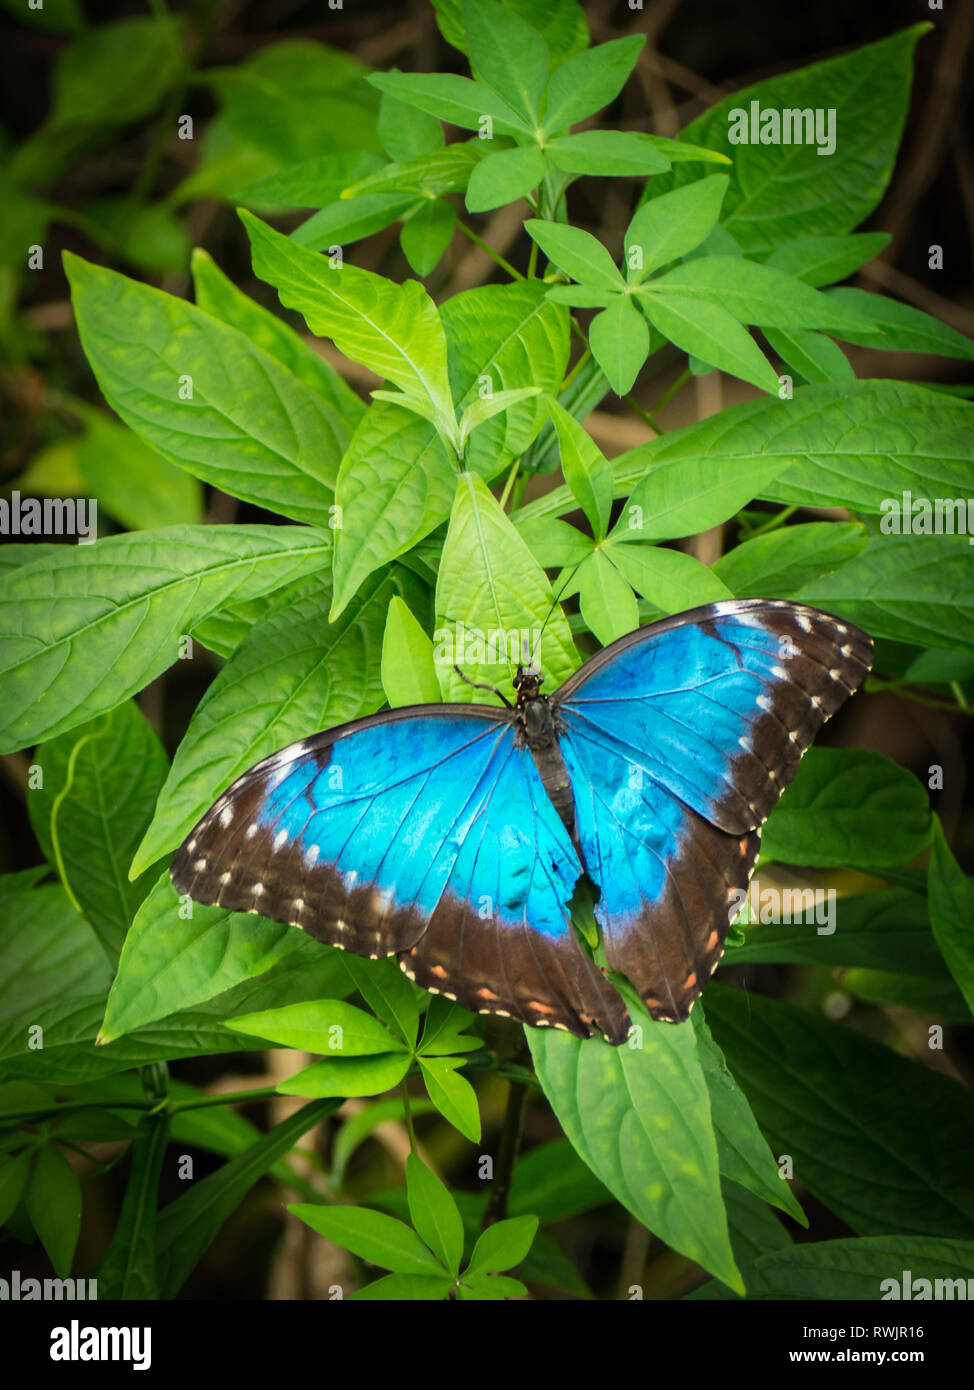 Blaue Morpho, Morpho peleides, großer Schmetterling sitzt auf grüne  Blätter, schöne Insekt in der Natur Lebensraum, die Tier- und Pflanzenwelt  von Amazonas in Peru, South Ameri Stockfotografie - Alamy